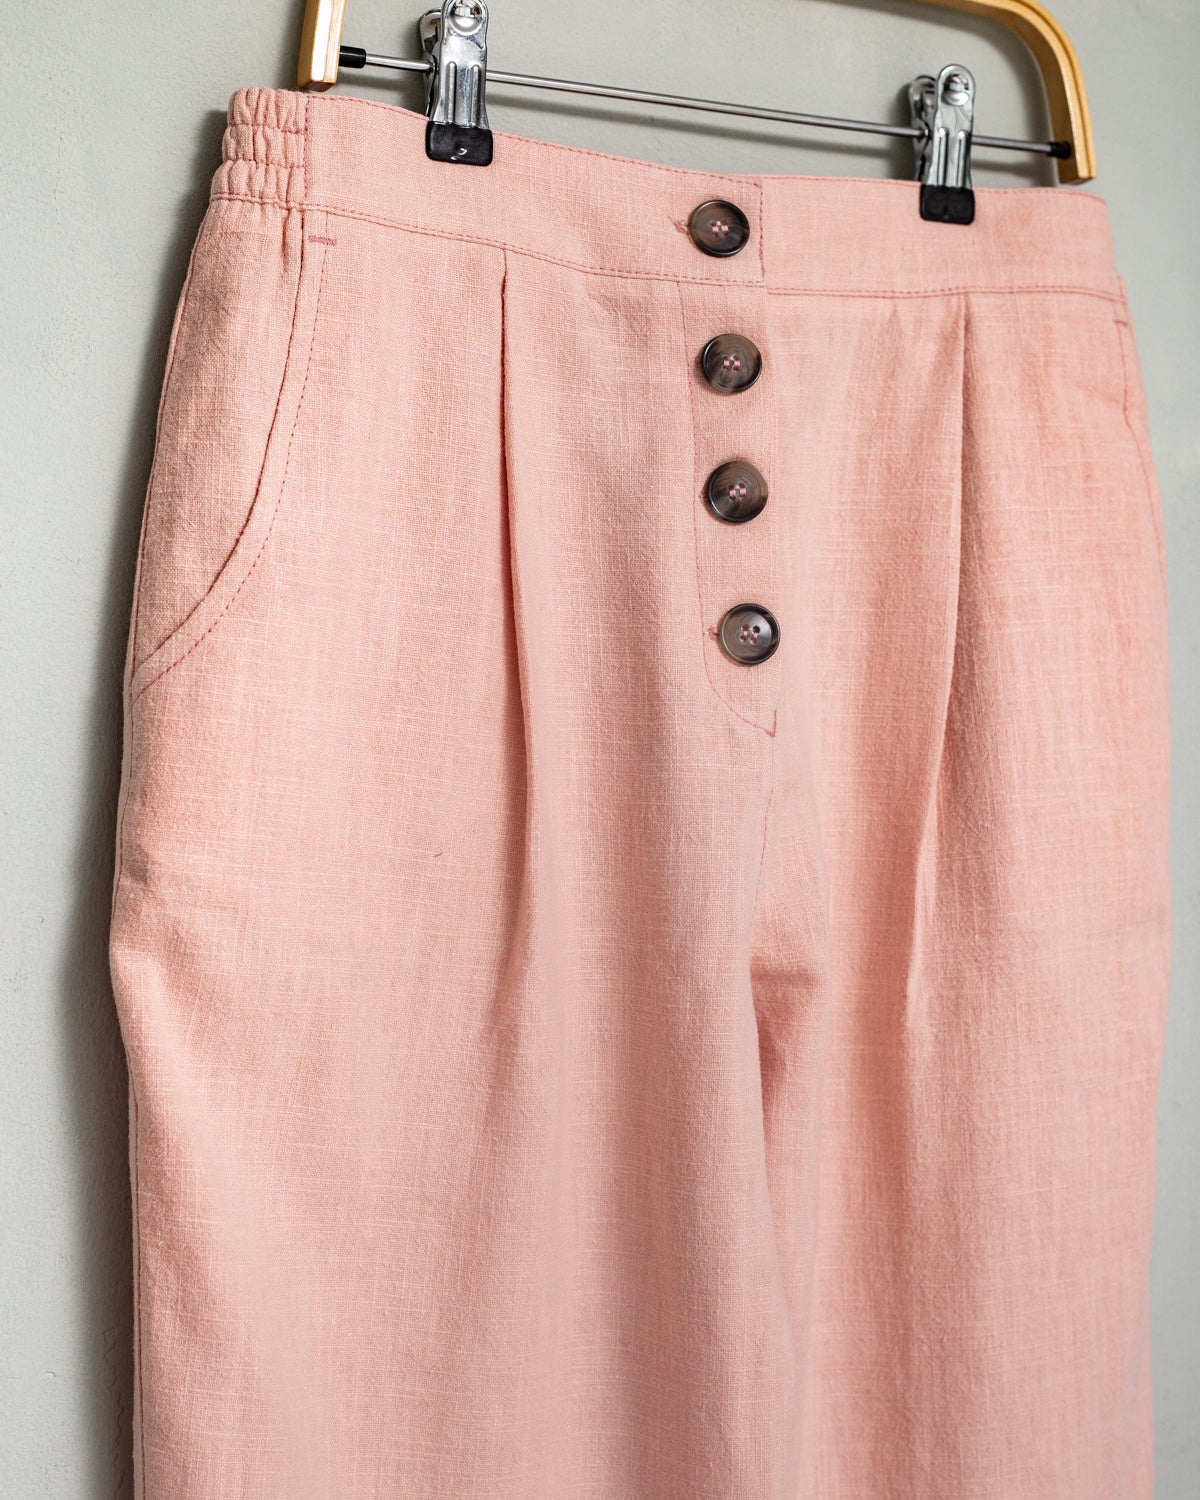 Popa Womens Trouser Dust Pink Womenswear Cosmosophie 